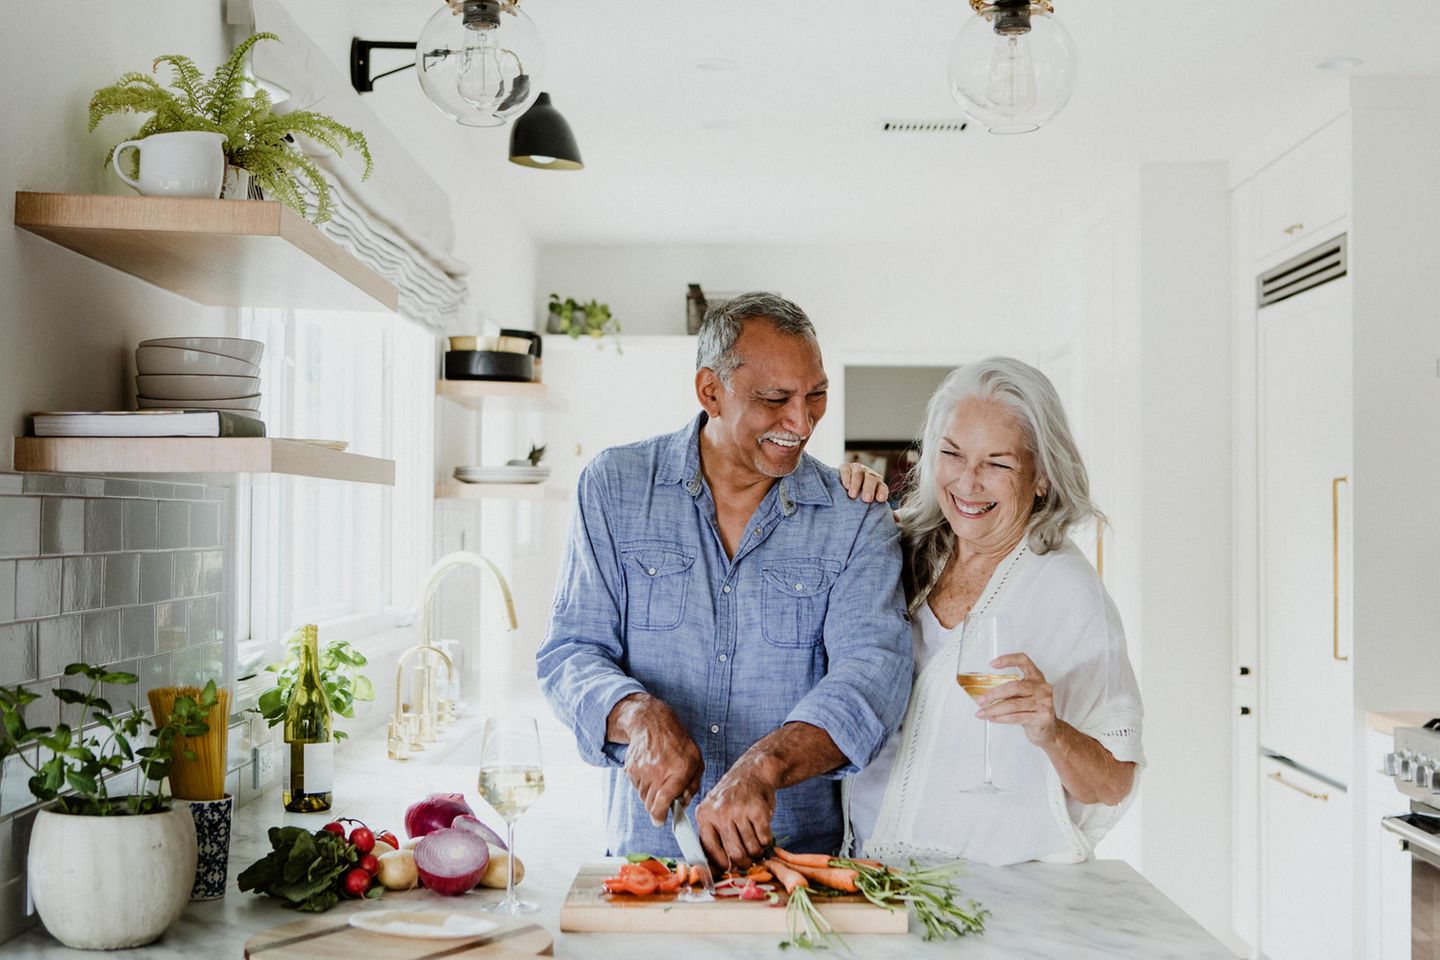 Älteres Paar kocht gemeinsam und lacht